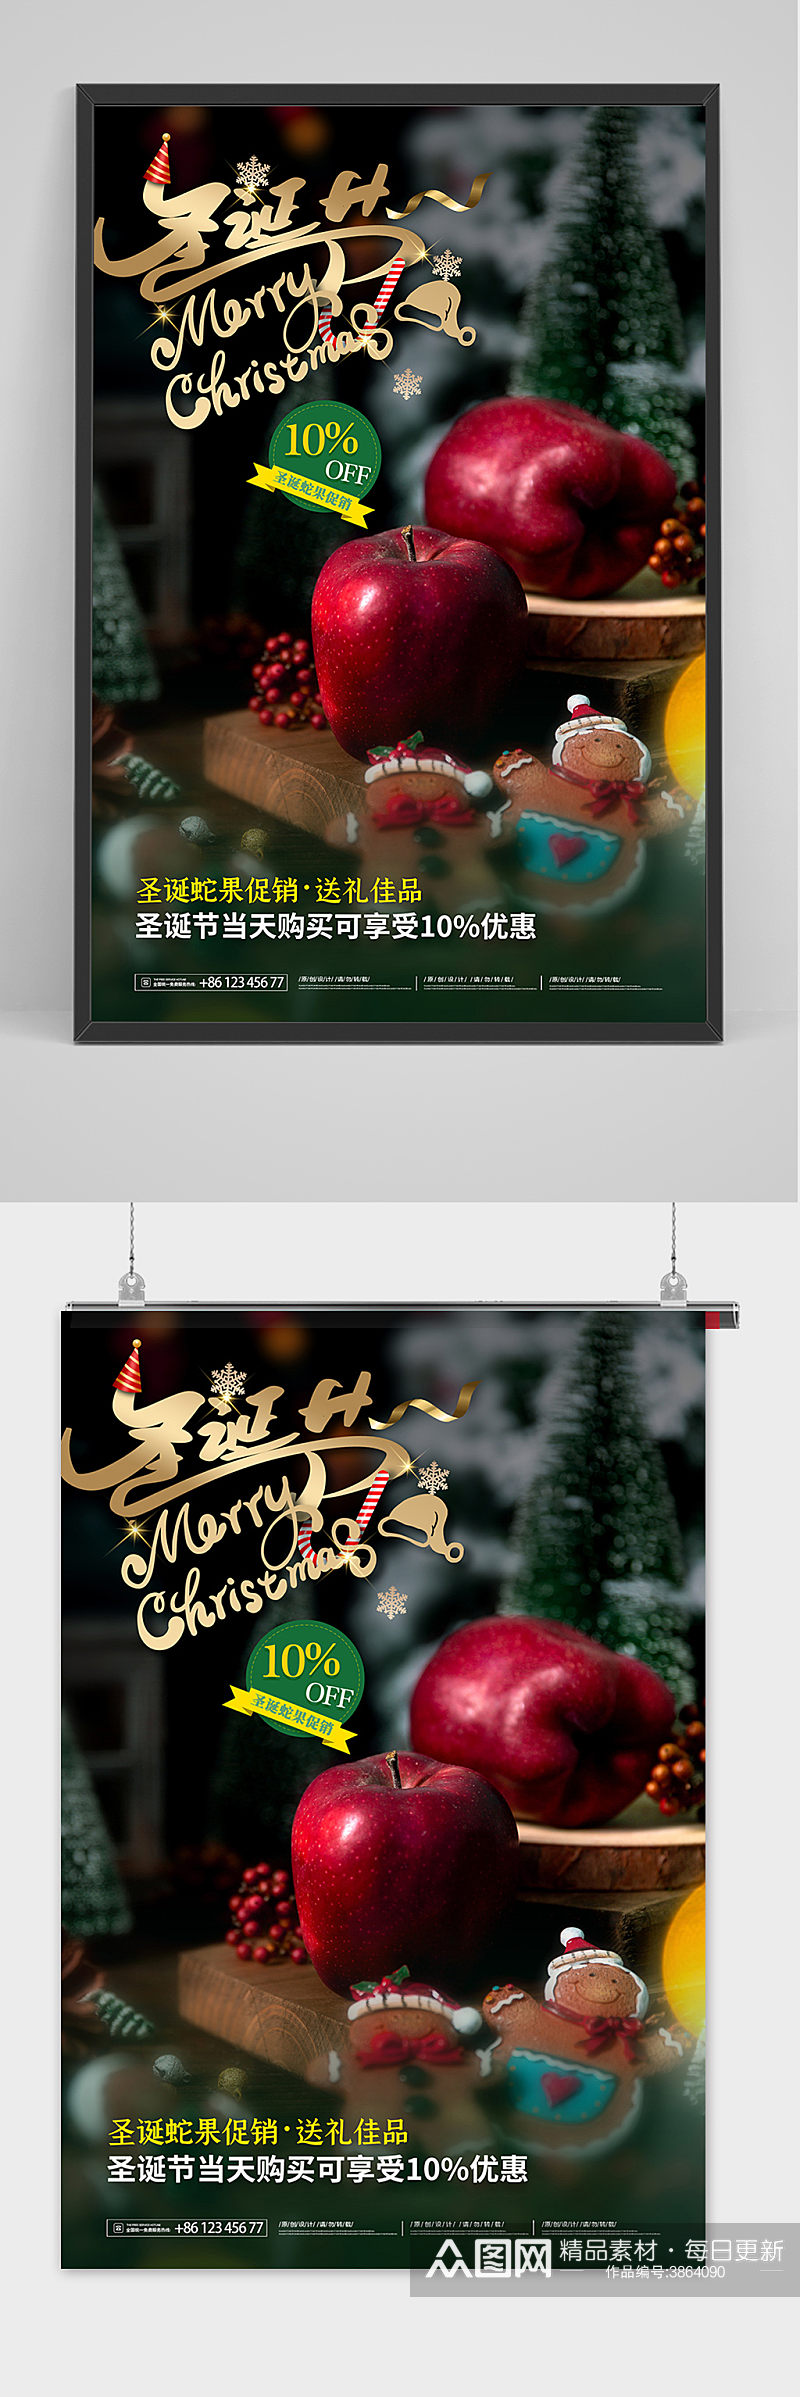 墨绿色圣诞节蛇果苹果平安果促销海报素材